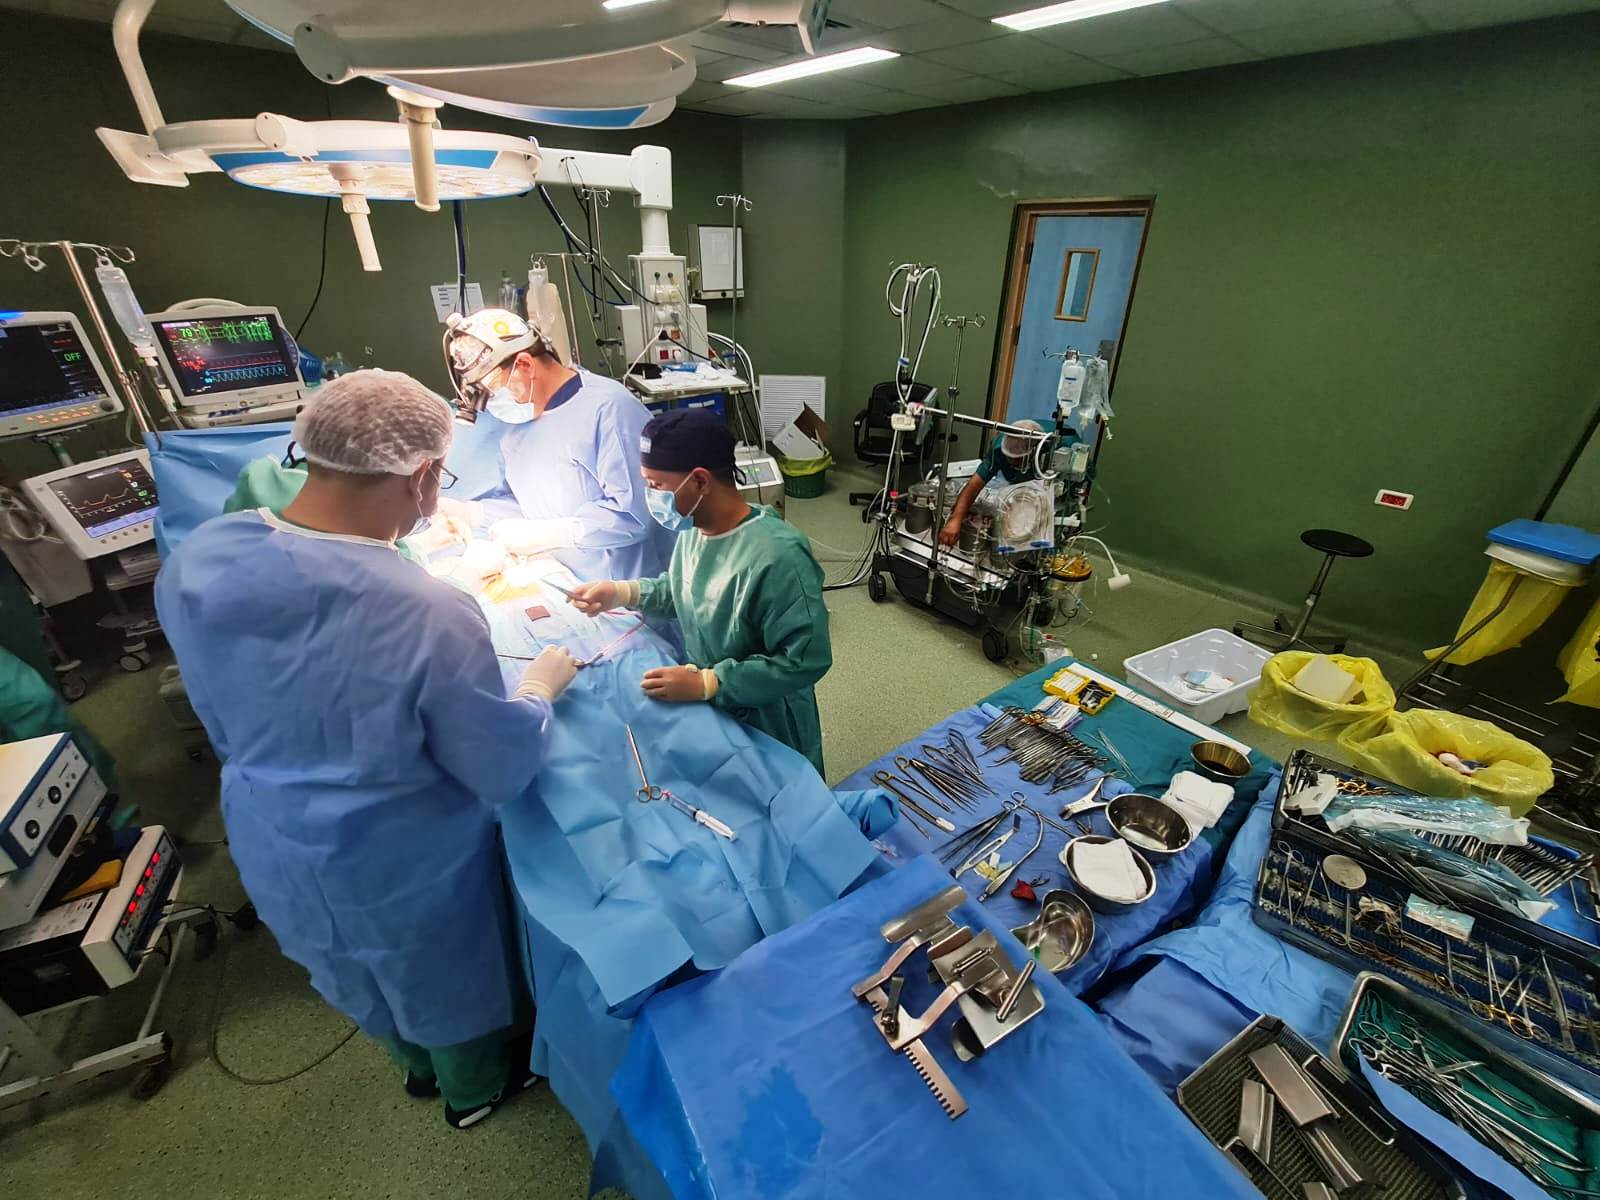 الوفد الطبي المصري يجري عمليات كبرى في غزة